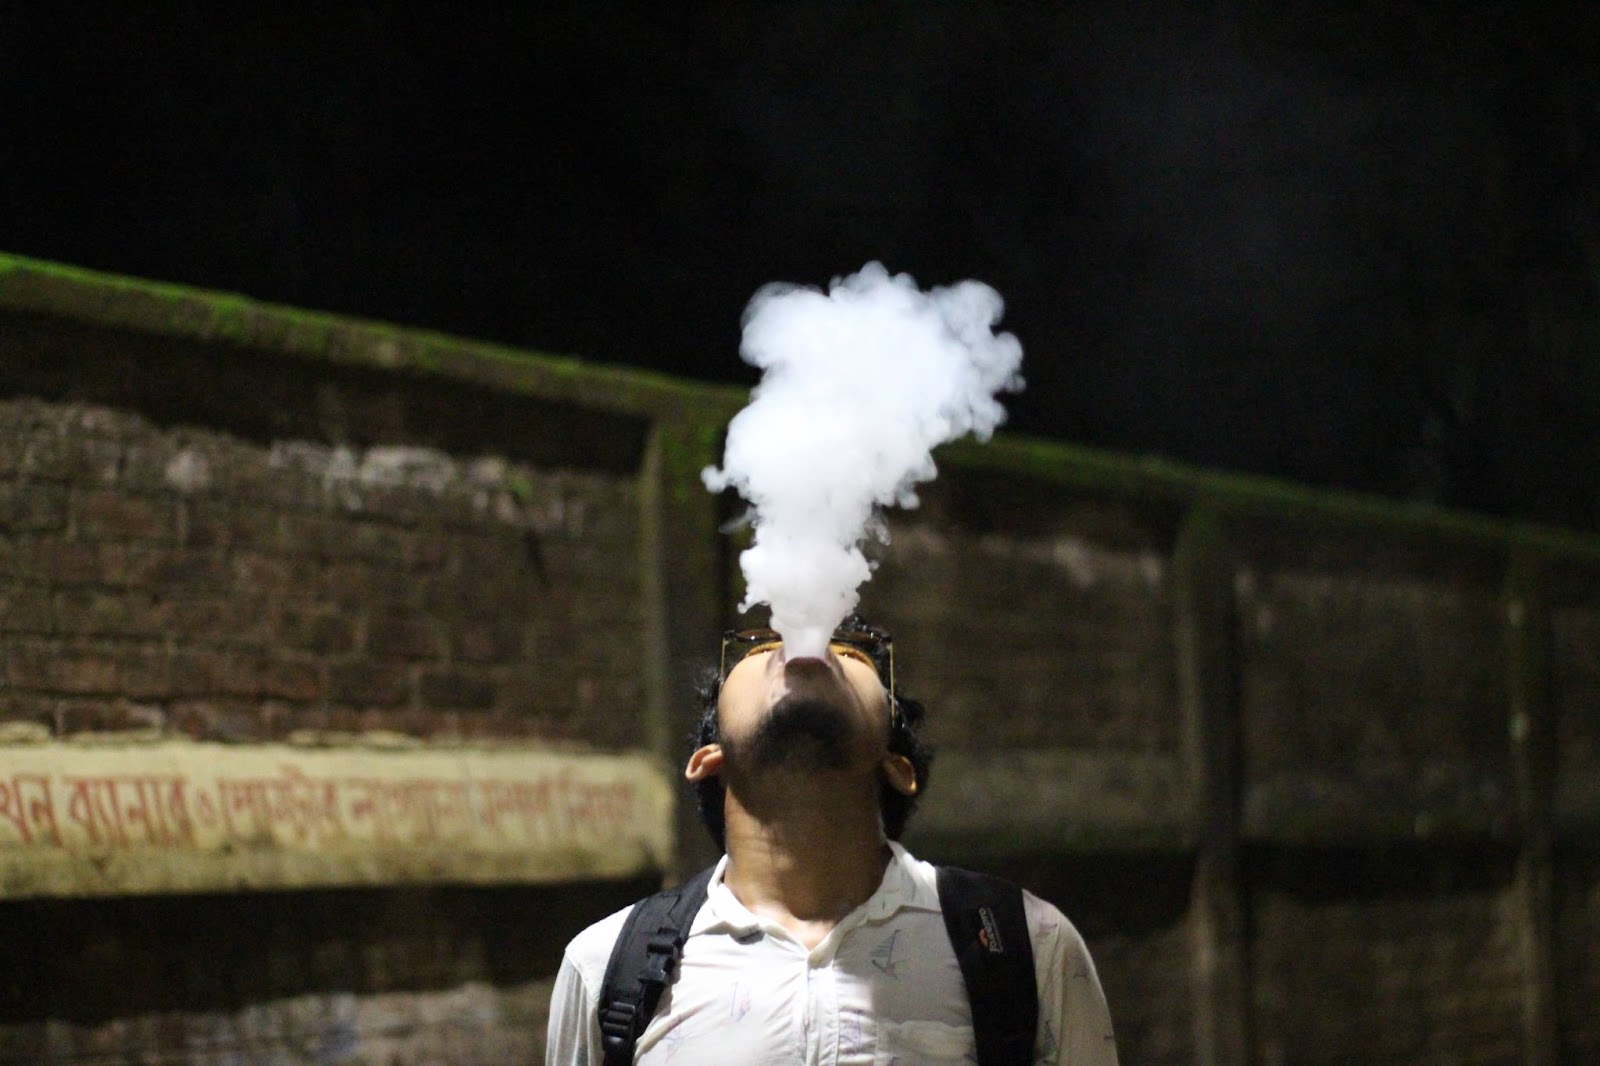 A man looking up exhaling a large vape cloud